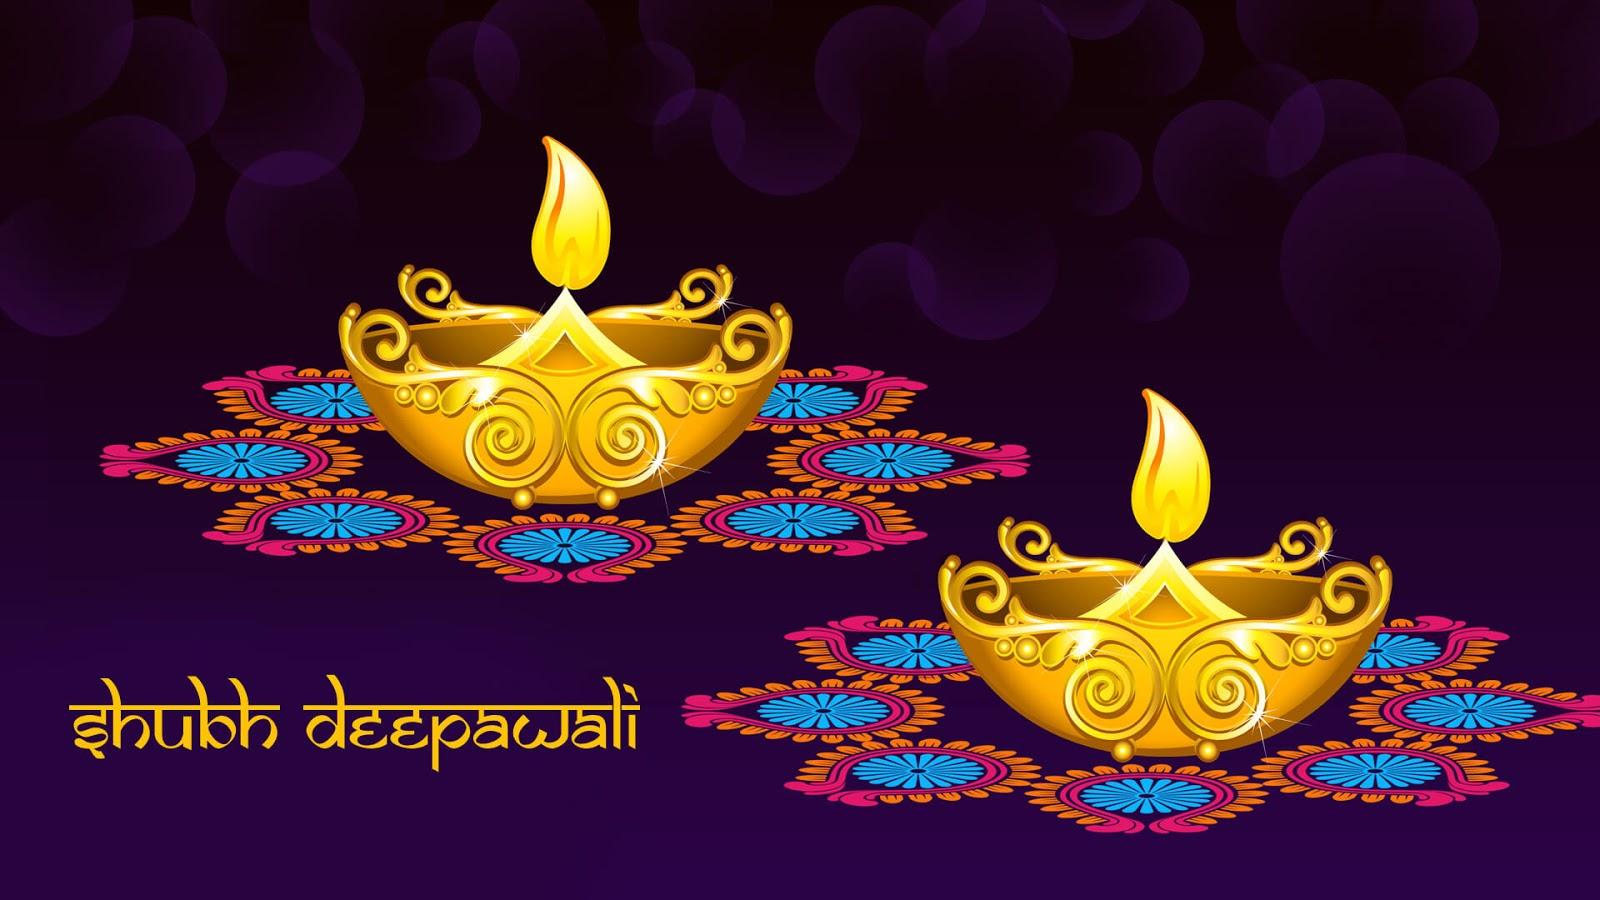 2019} Happy Diwali Wallpaper On Web